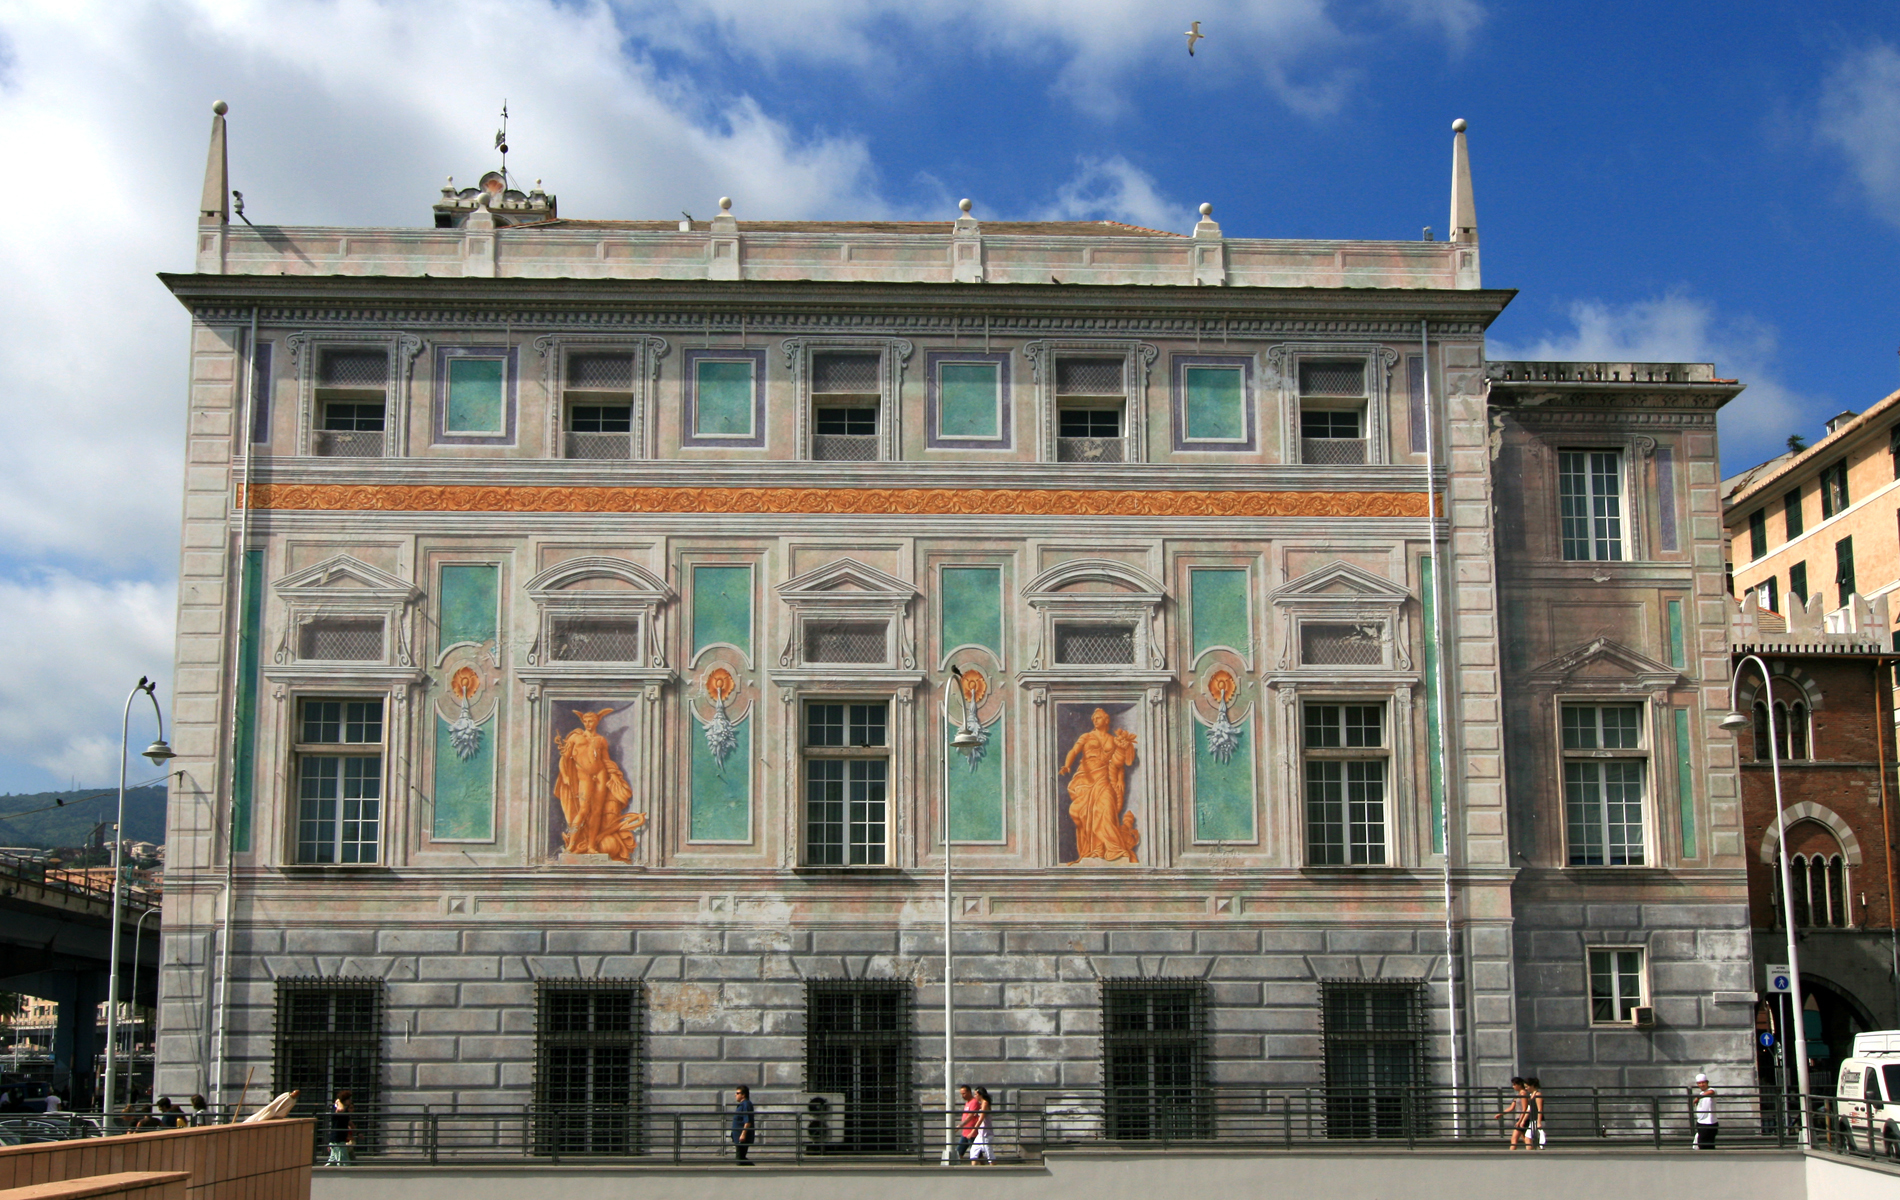 Св банк. Палаццо Сан-Джорджо Генуя. Генуэзский банк Святого Георгия. Банк Святого Георгия в Генуе. Италия Genova Palazzo San Giorgio.